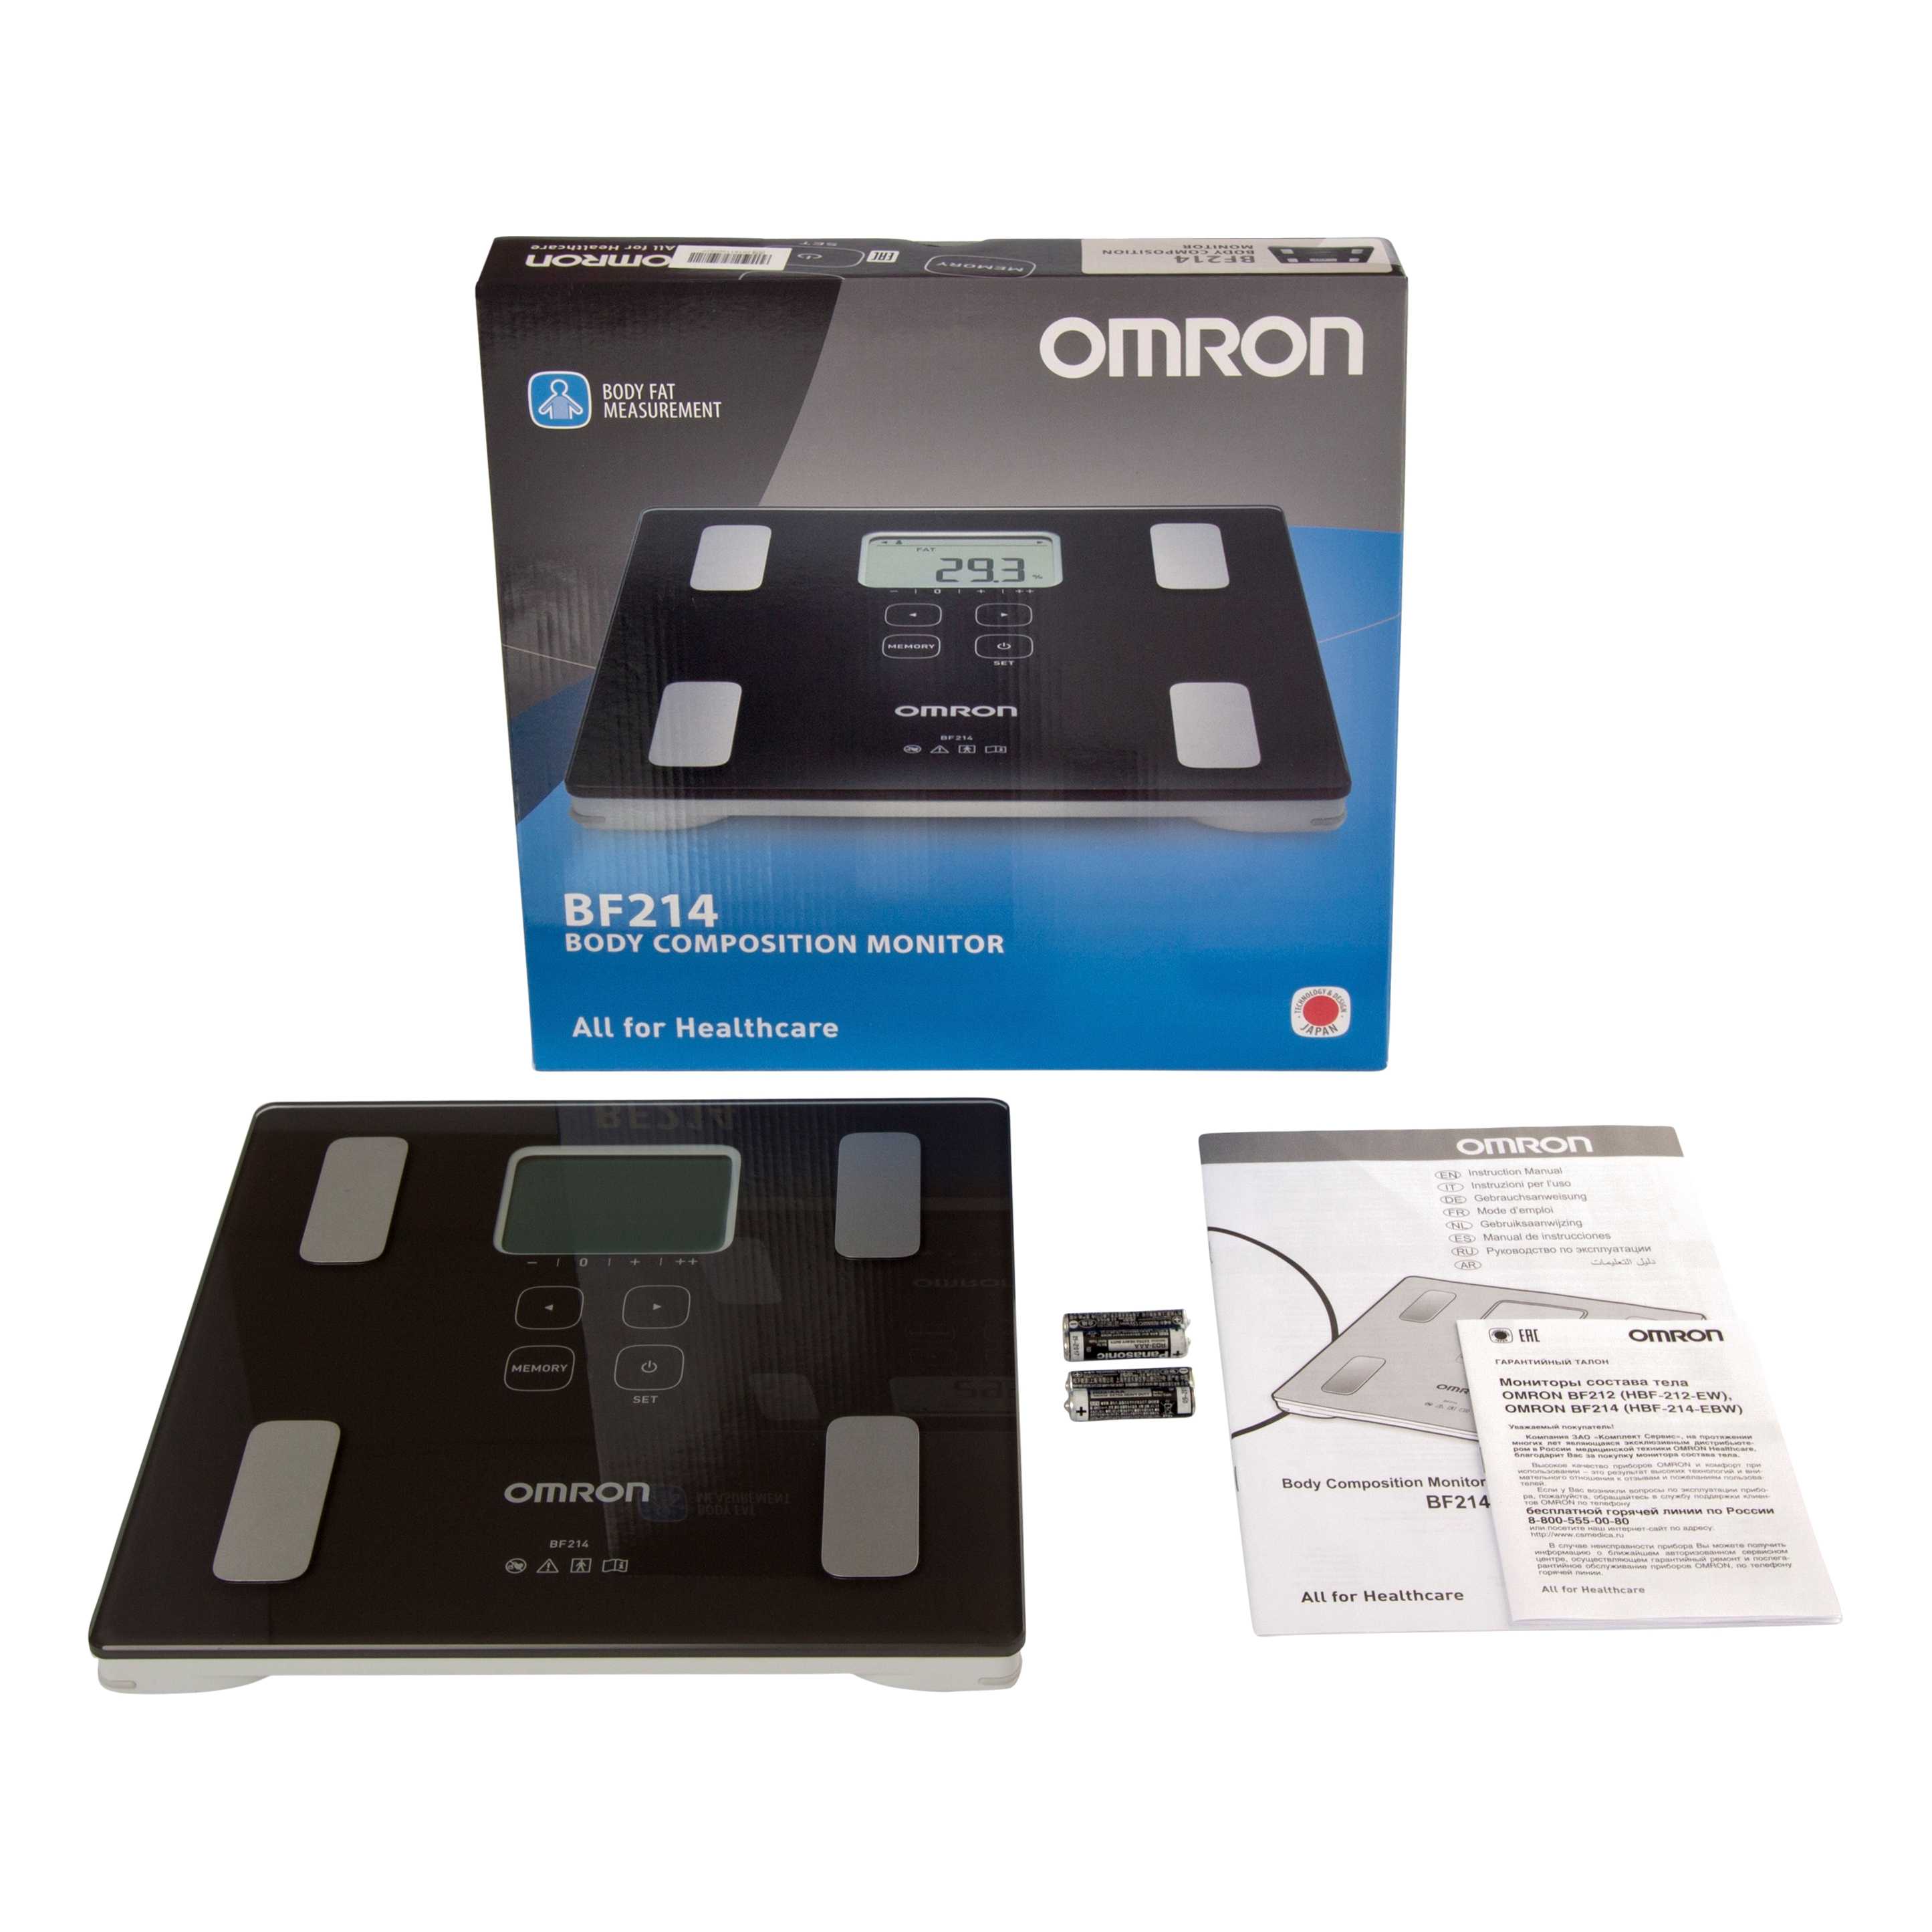 Omron весы-анализатор состава тела bf212 (hbf-212-ew/000000981) купить за 3665 руб в новосибирске, отзывы, видео обзоры